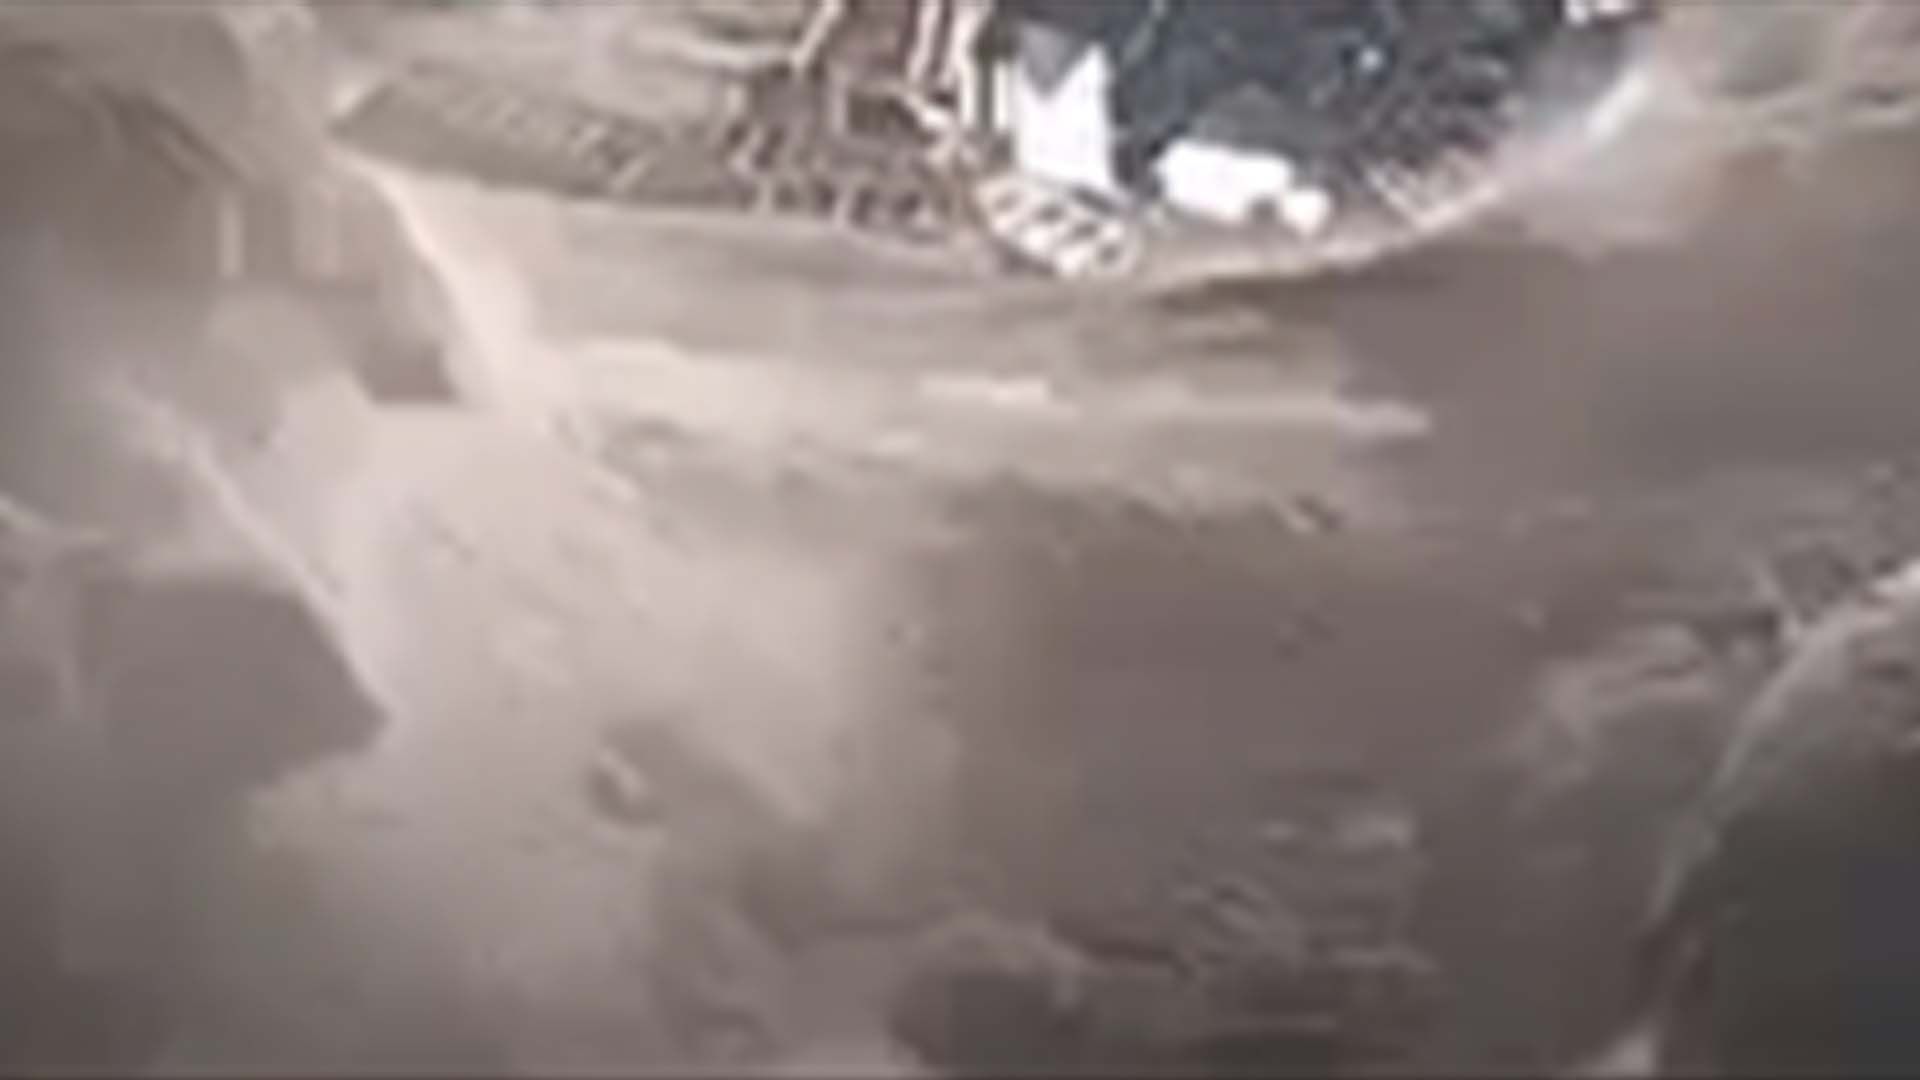  З'явилося відео прориву дамби на Біломорканалі в Карелії